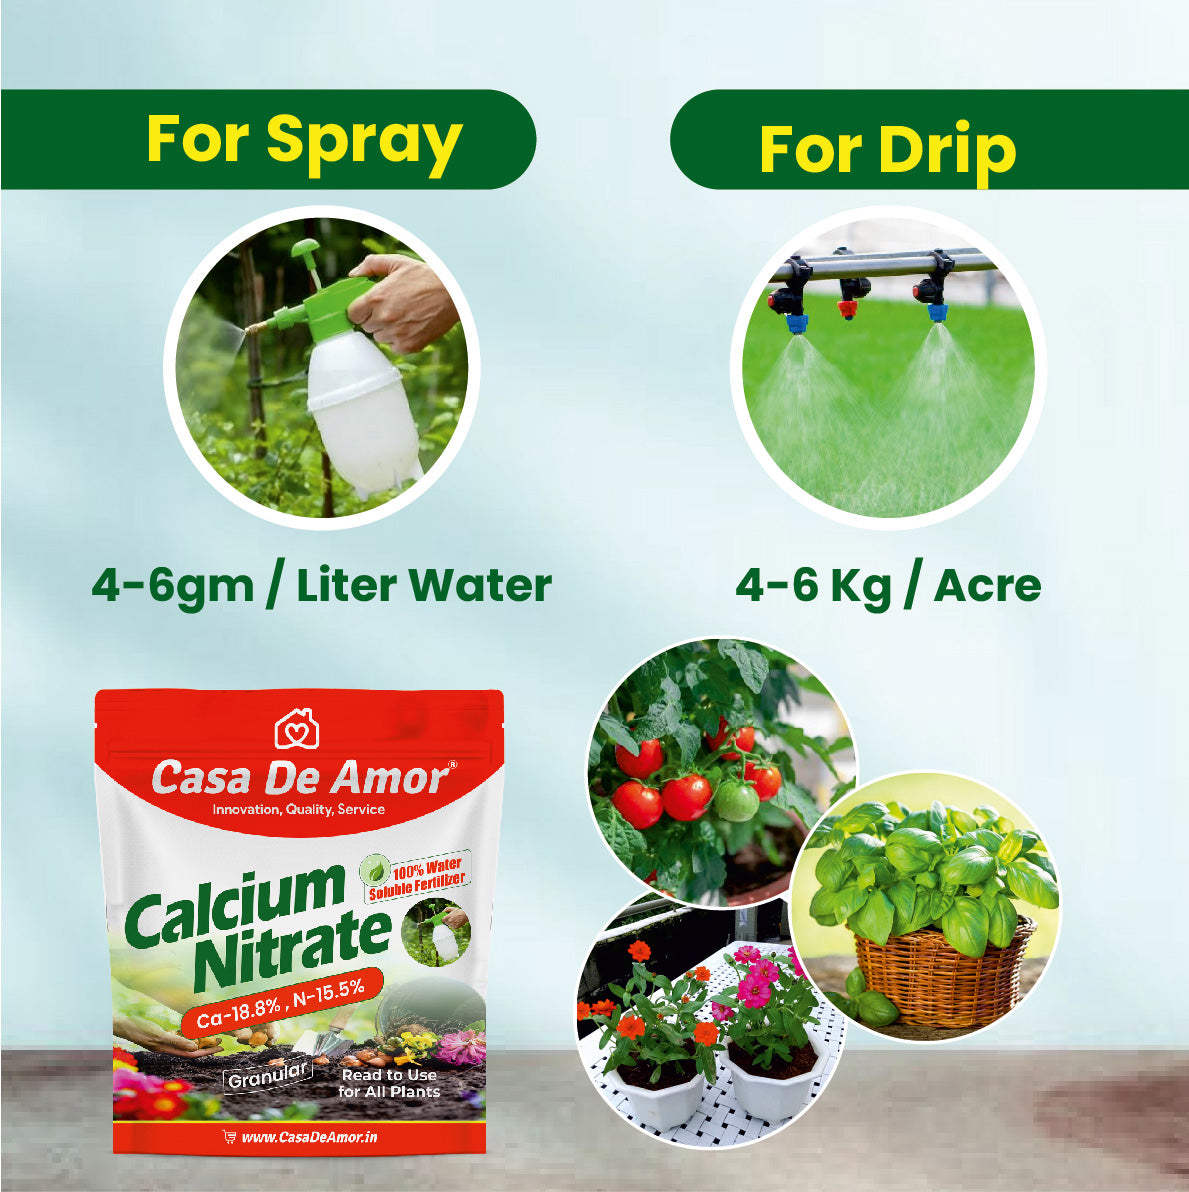 Calcium Nitrate Fertilizer (100% Water Soluble Fertilizer)